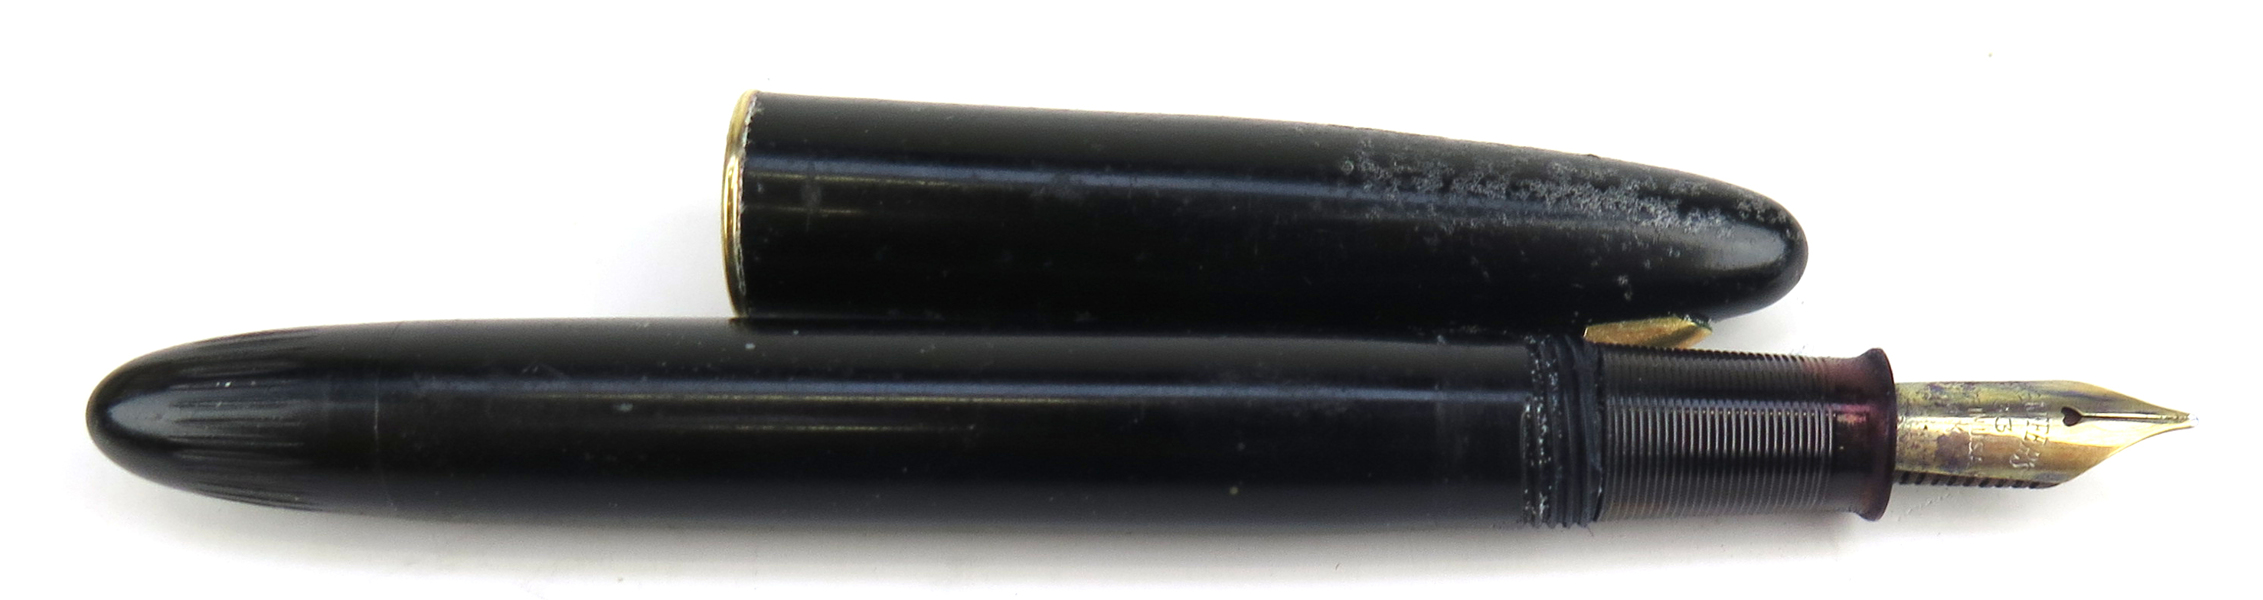 Reservoirpenna, Sheaffer, 1900-talets 1 hälft, 33-stift i 14 karat rödguld, _24972a_lg.jpeg